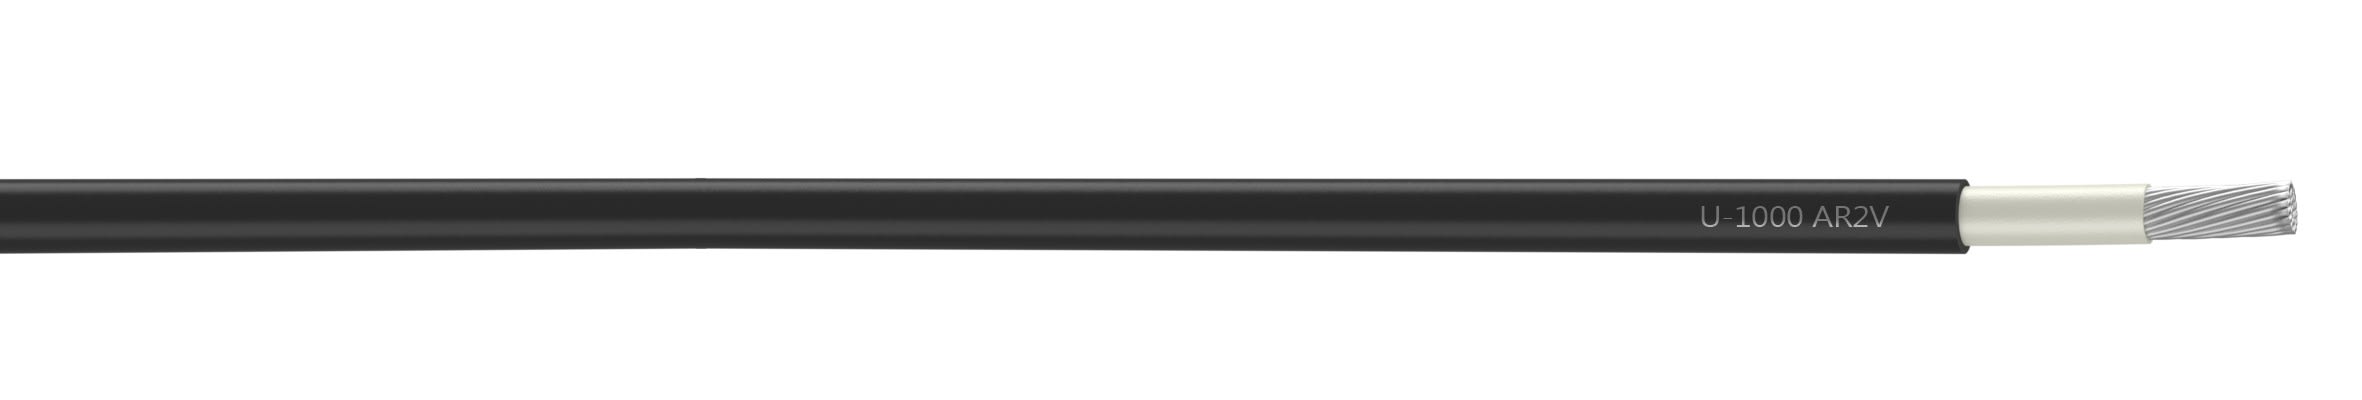 Nexans - Câble rigide U-1000 AR2V aluminium 1x25 longueur à la coupe